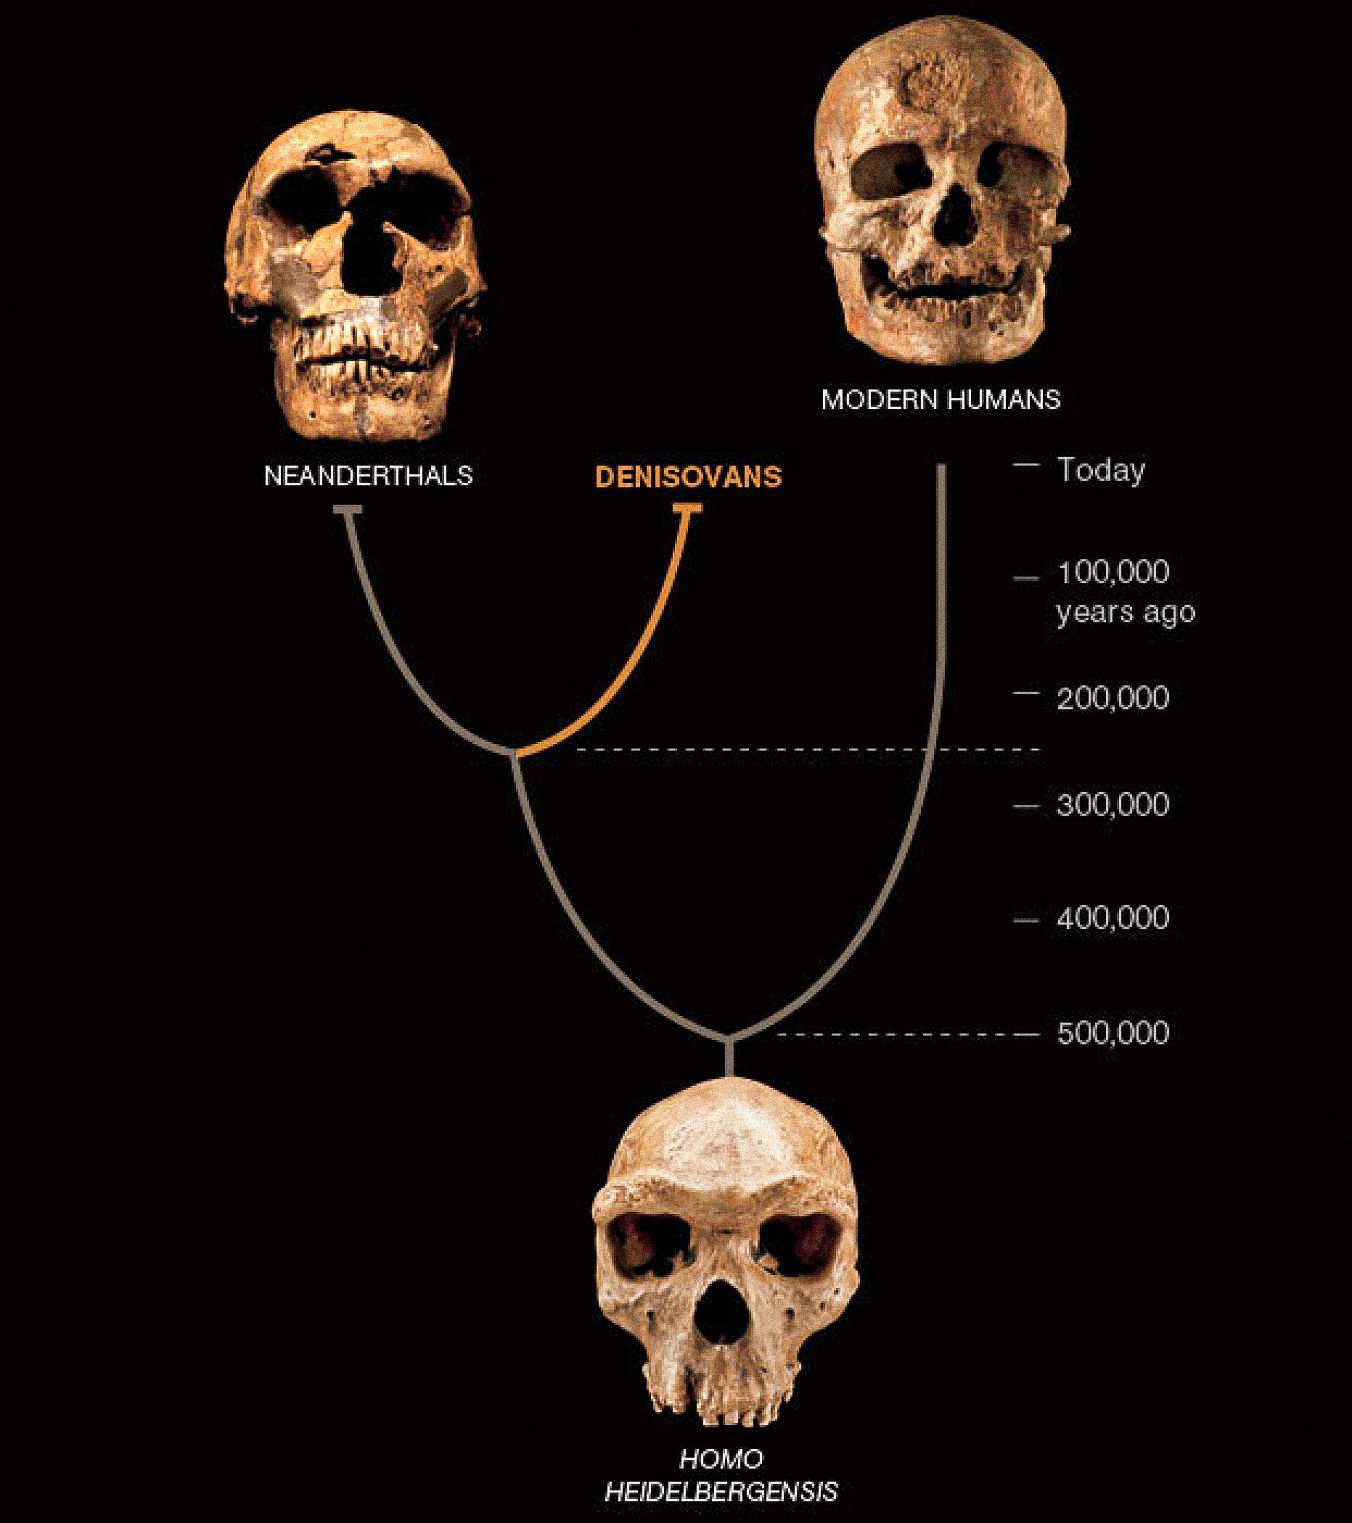 Um terceiro tipo de humano, chamado denisovano, parece ter coexistido na Ásia com os neandertais e os primeiros humanos modernos. Os dois últimos são conhecidos a partir de abundantes fósseis e artefatos. Os denisovanos são definidos até agora apenas pelo DNA de um fragmento de osso e dois dentes - mas revela uma nova reviravolta na história humana.